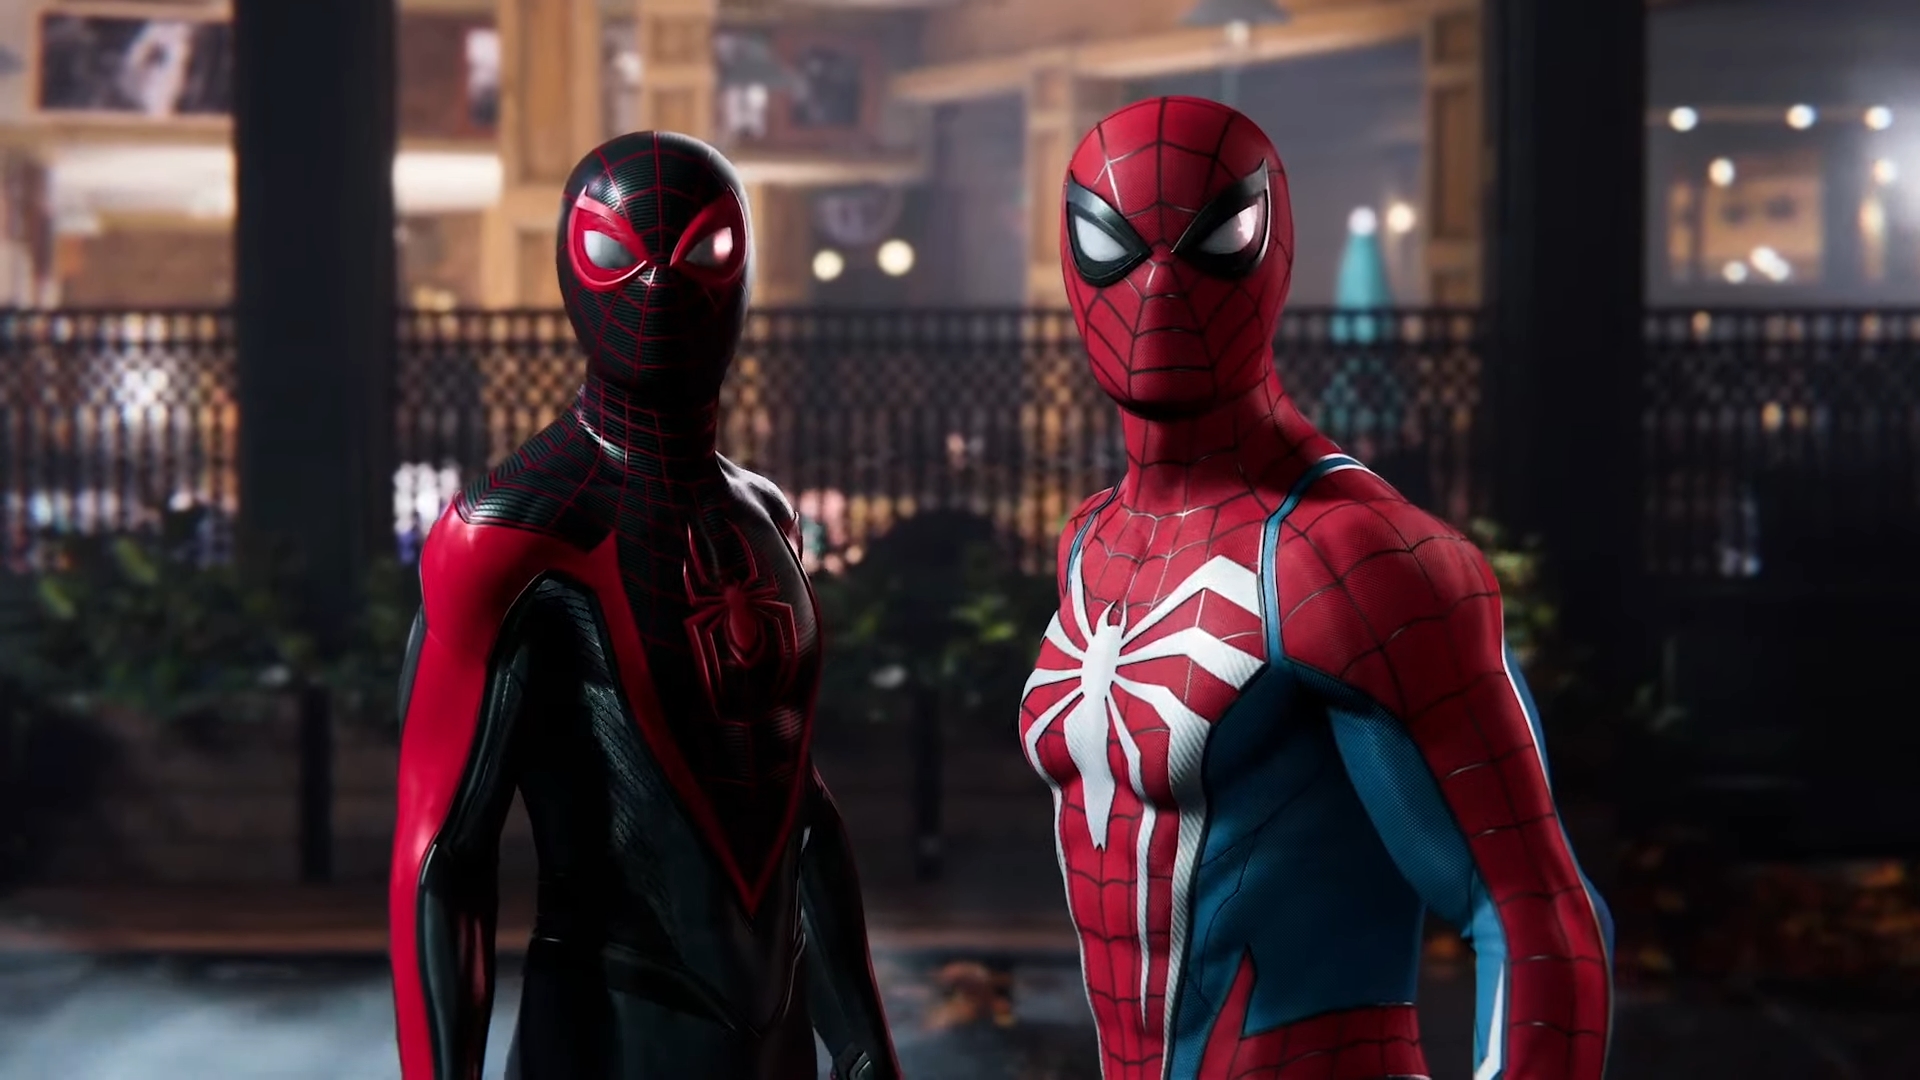 Tangkapan layar Marvel's Spider-Man 2 menunjukkan Peter Parker dan Miles Morales berdiri berdampingan dengan setelan Spider-Man masing-masing